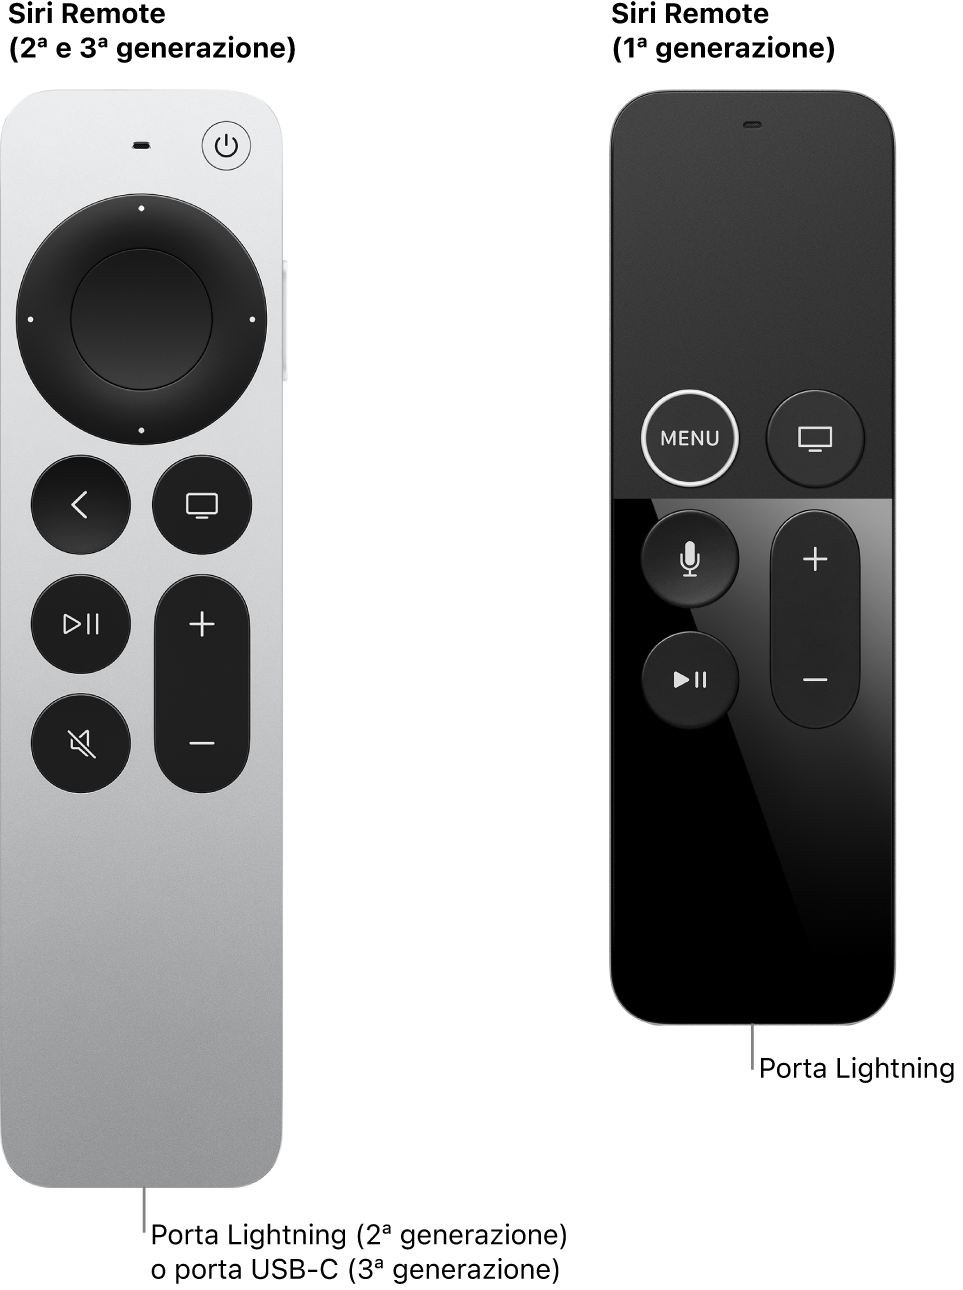 Immagine di Siri Remote (di seconda e terza generazione) e Siri Remote (di prima generazione) con la porta del connettore